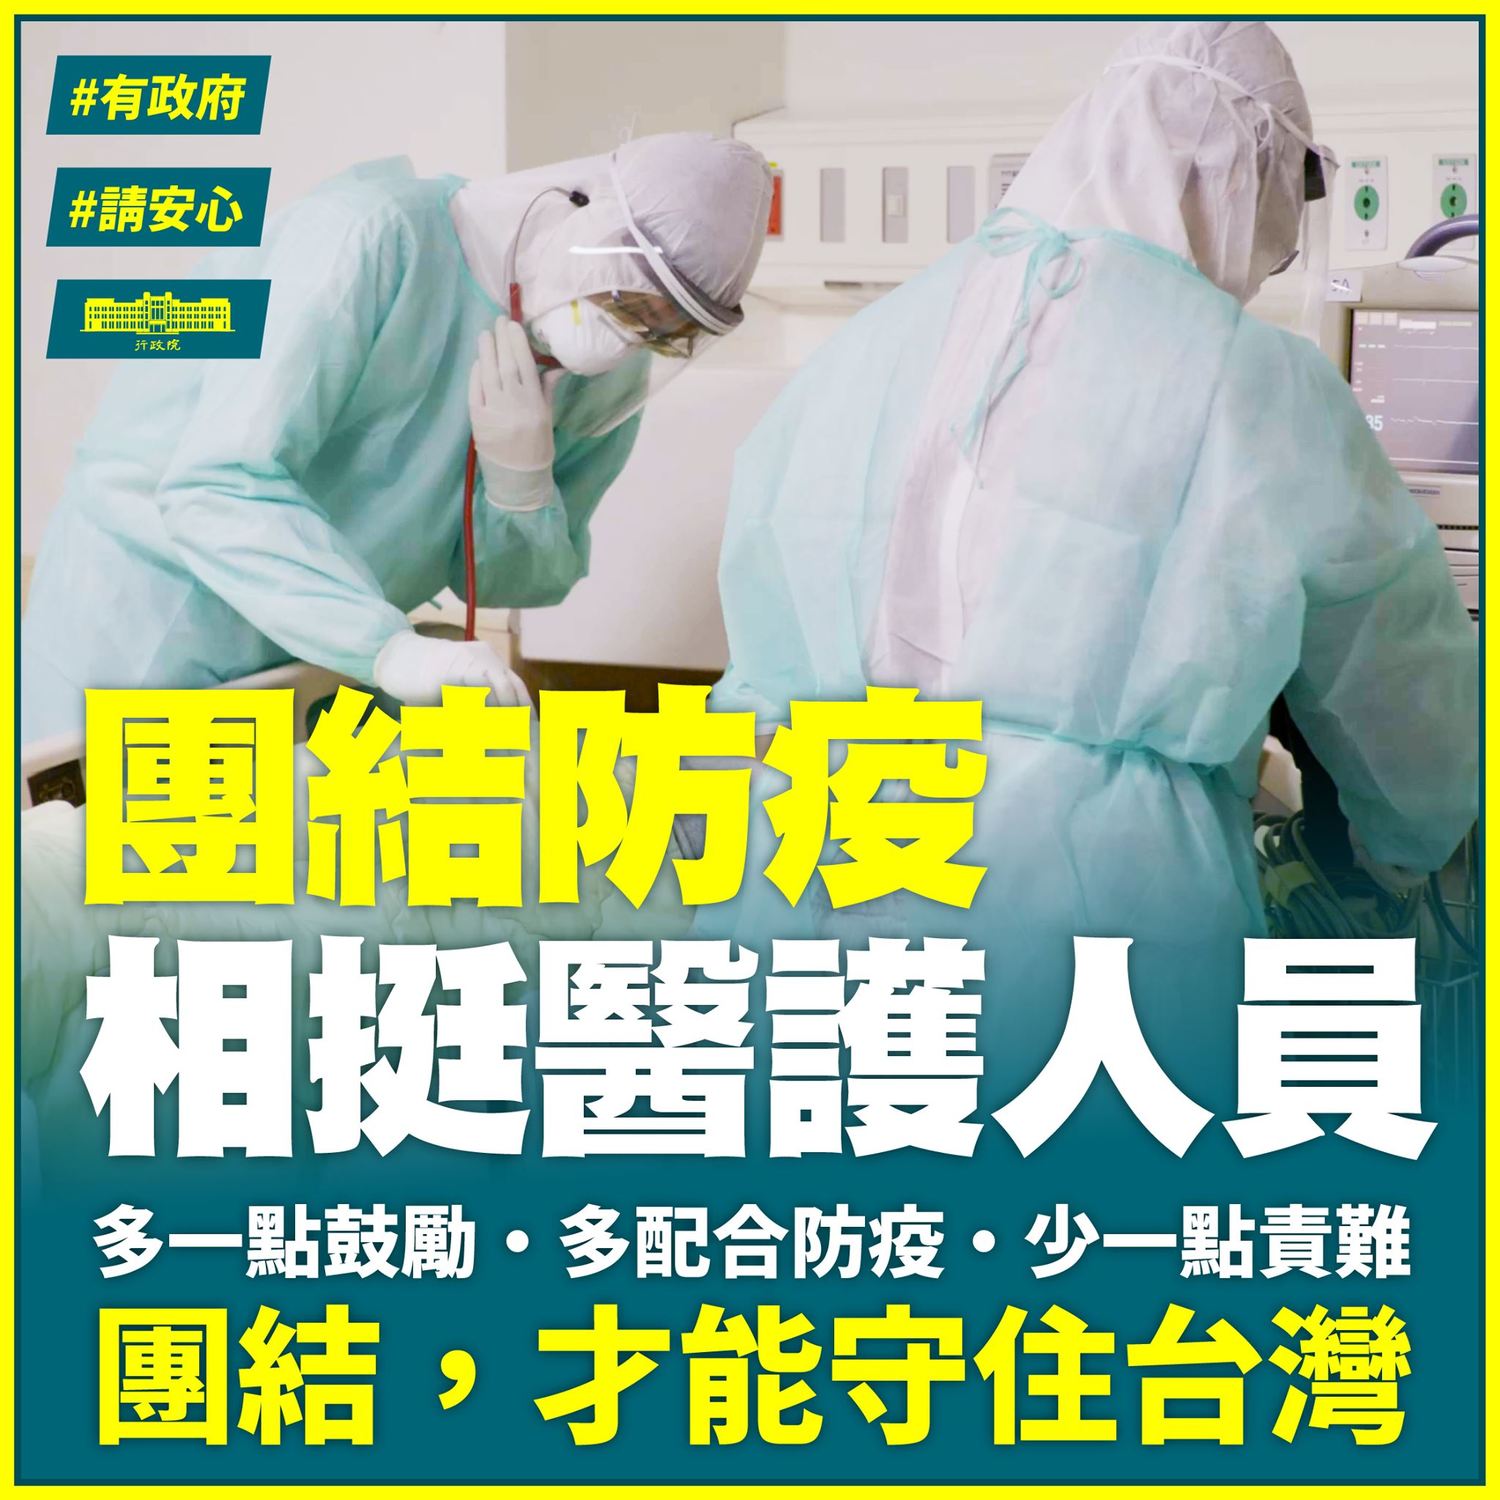 蘇貞昌： 給予醫護支持 珍惜台灣防疫成果勿掉以輕心